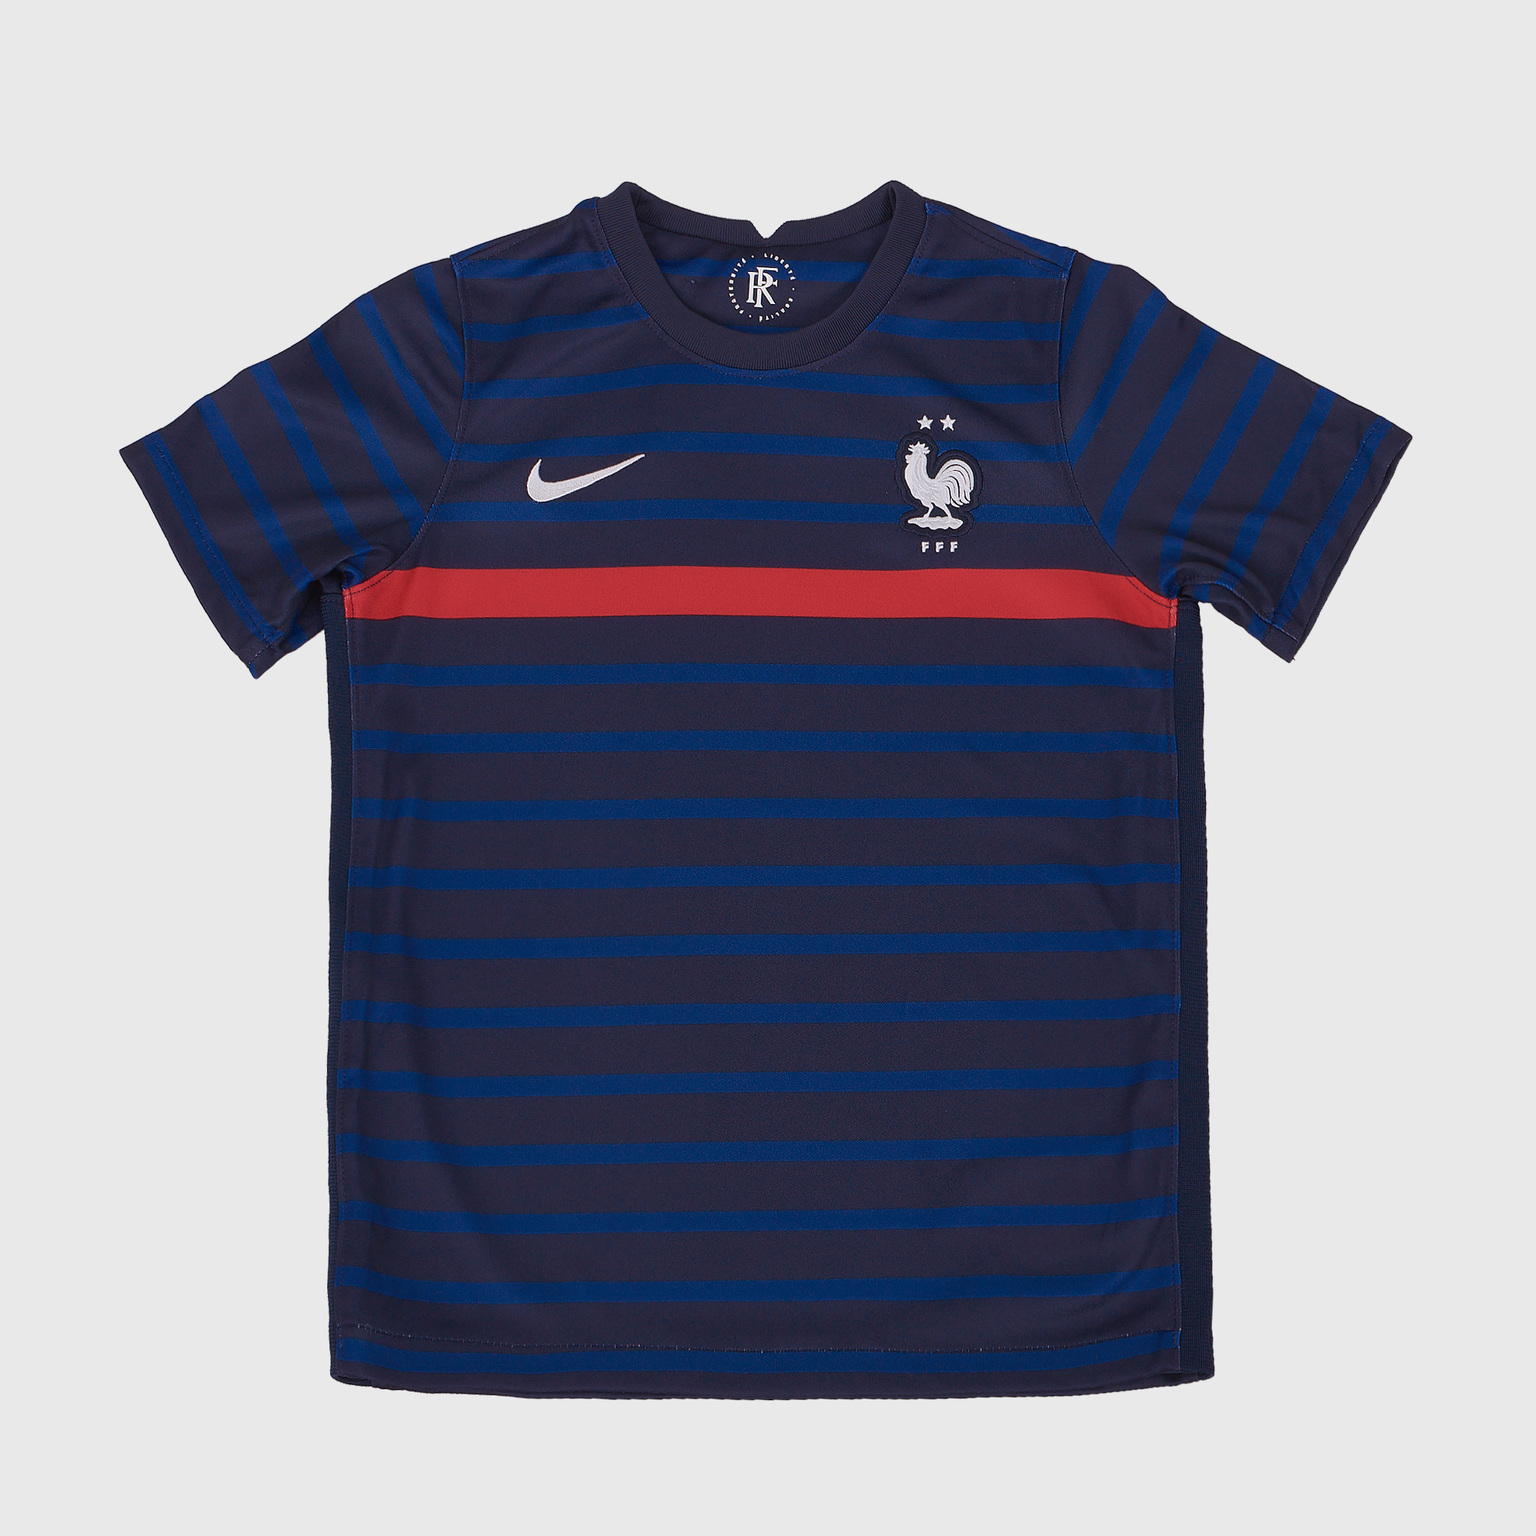 Комплект детской формы Nike сборной Франции сезон 2020/21